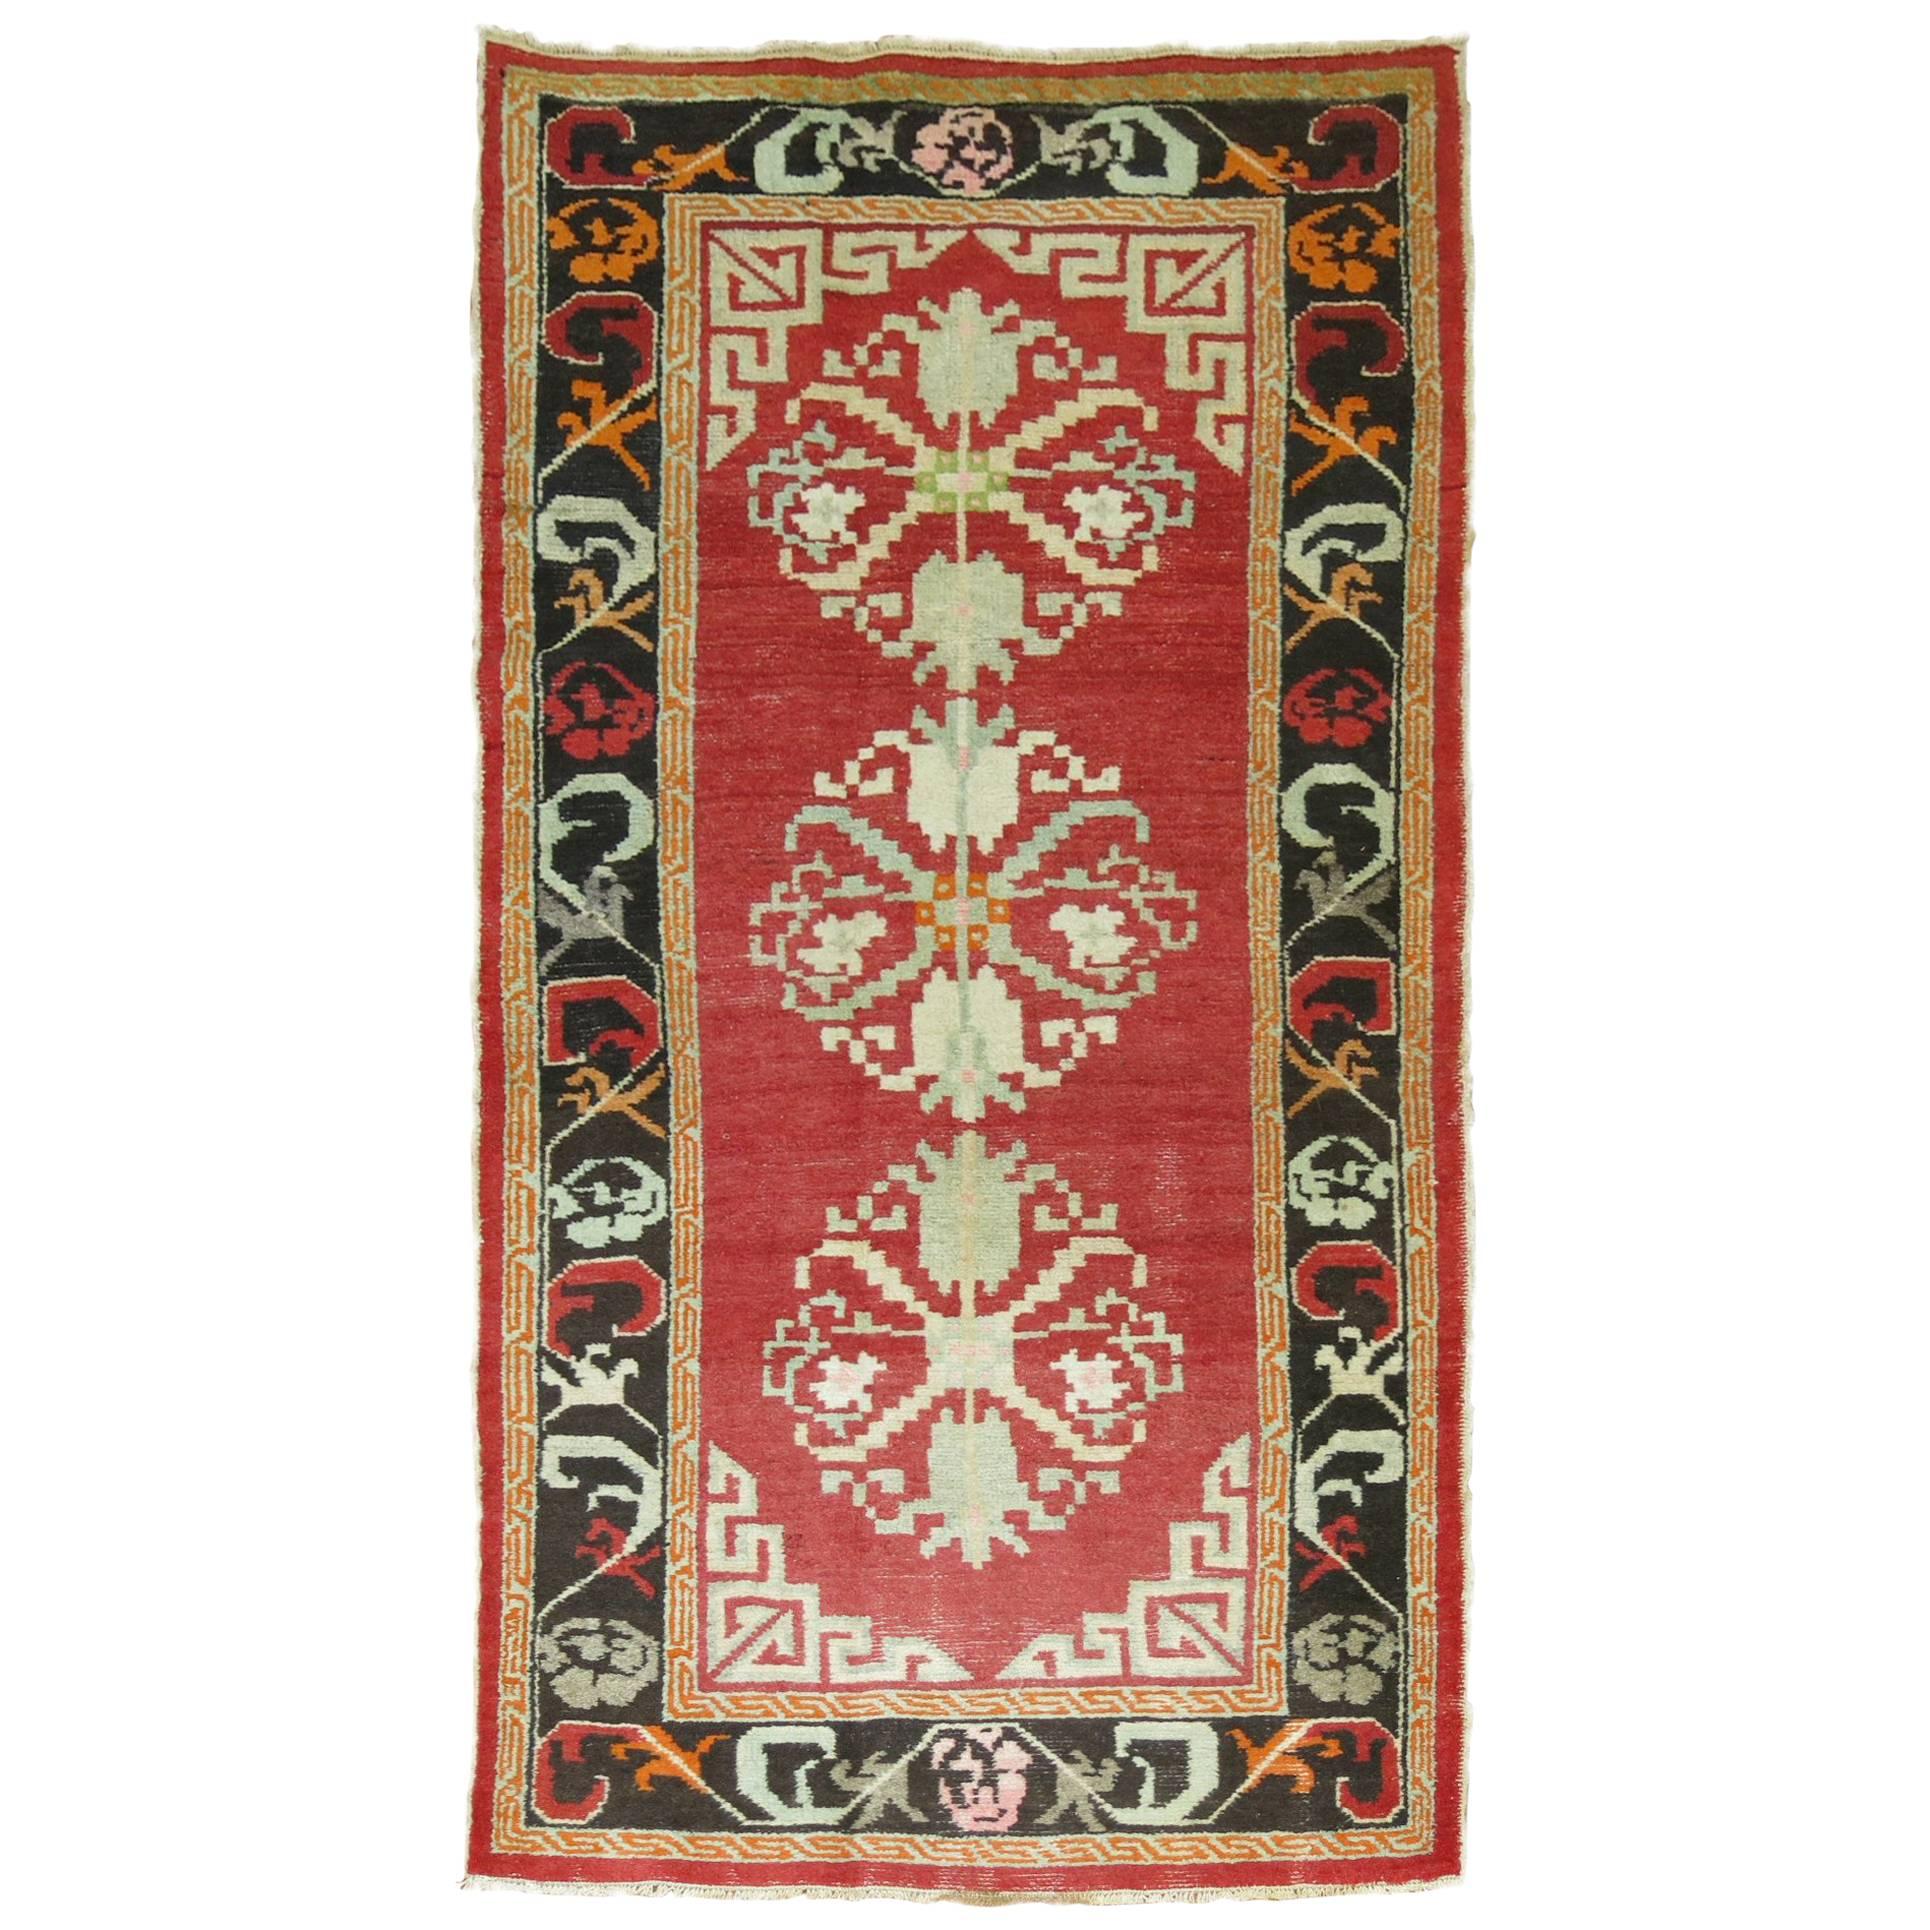 Türkischer Vintage-Teppich im mongolischen Stil, beeinflusst von Teppichen